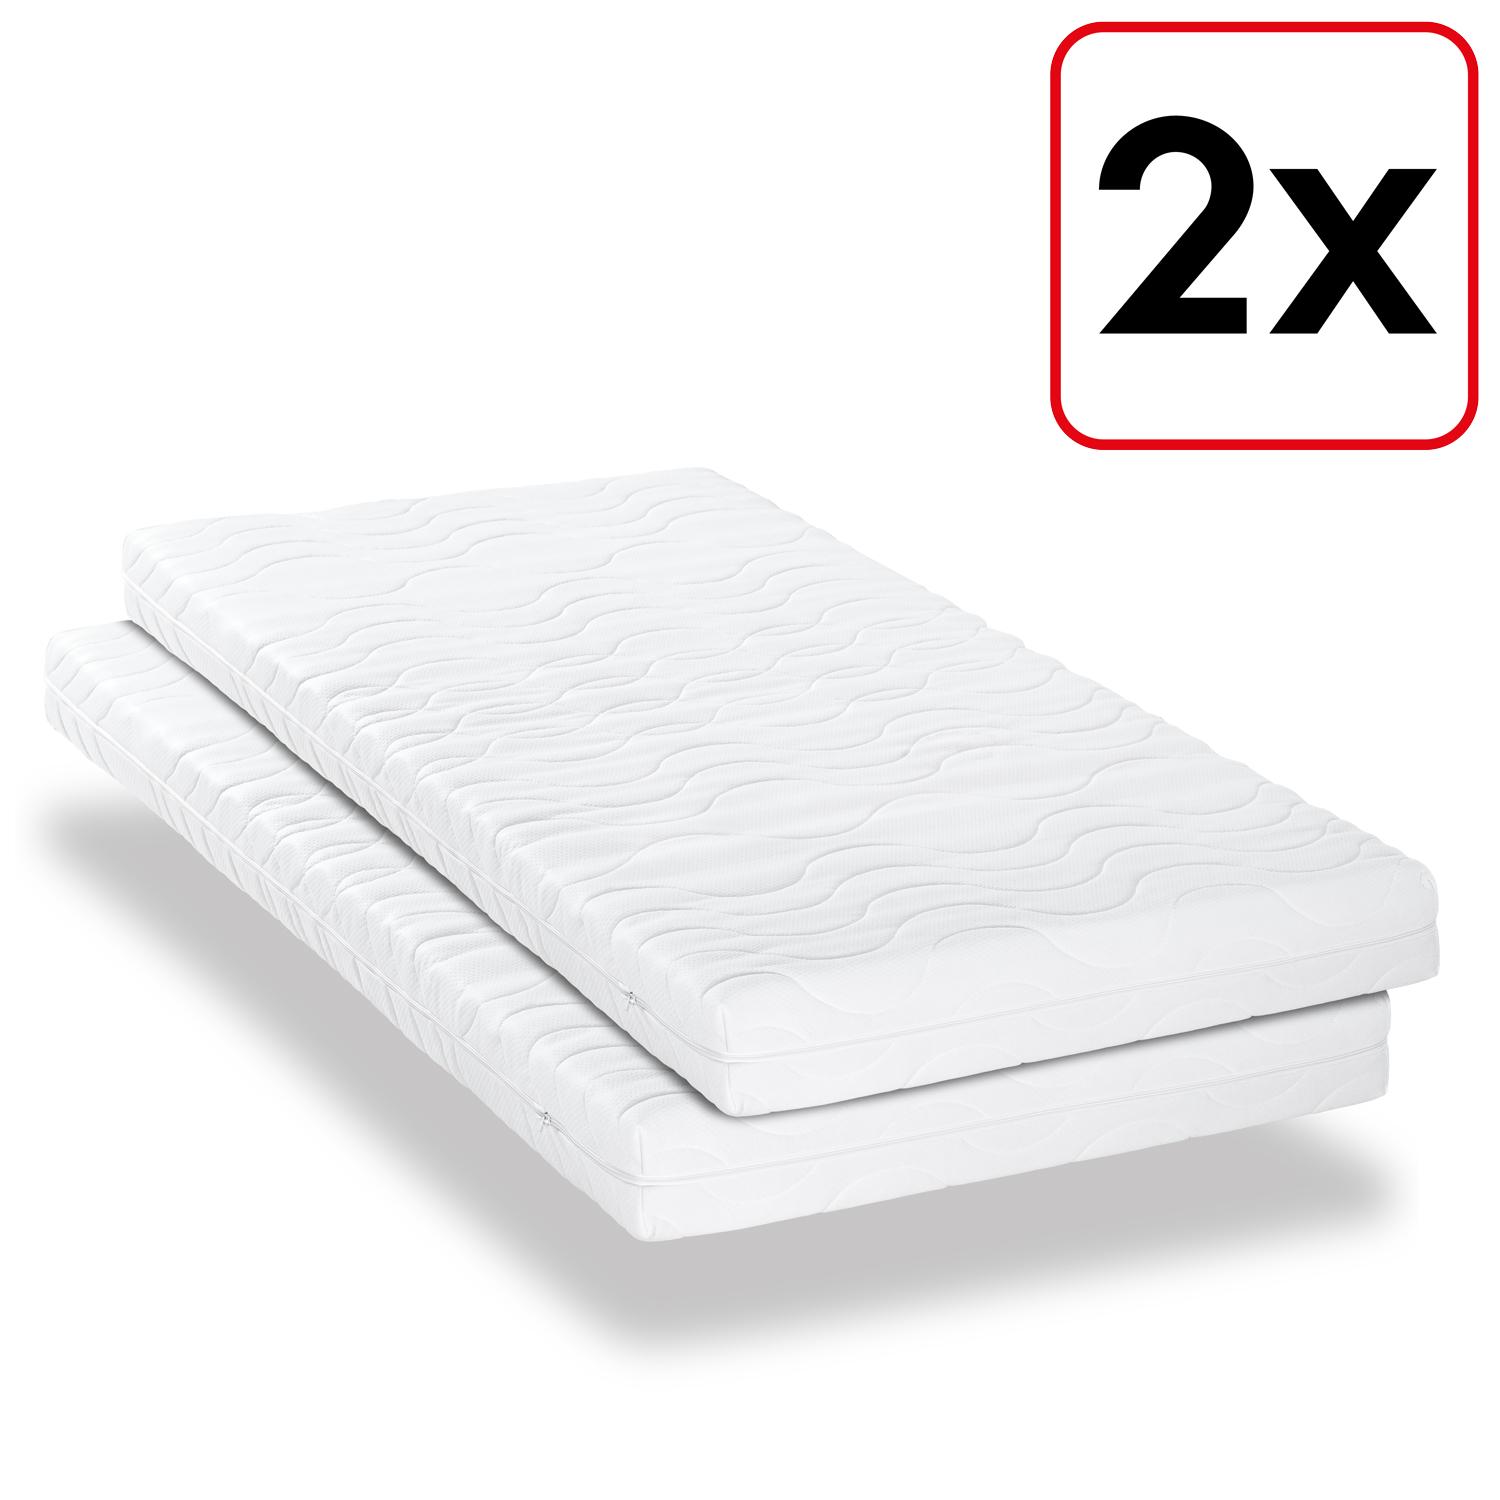 Çift kişilik premium 7 bölgeli yatak 100x200 cm CloudComfort, yükseklik 15 cm, sertlik seviyesi H2/H3, ikiz set